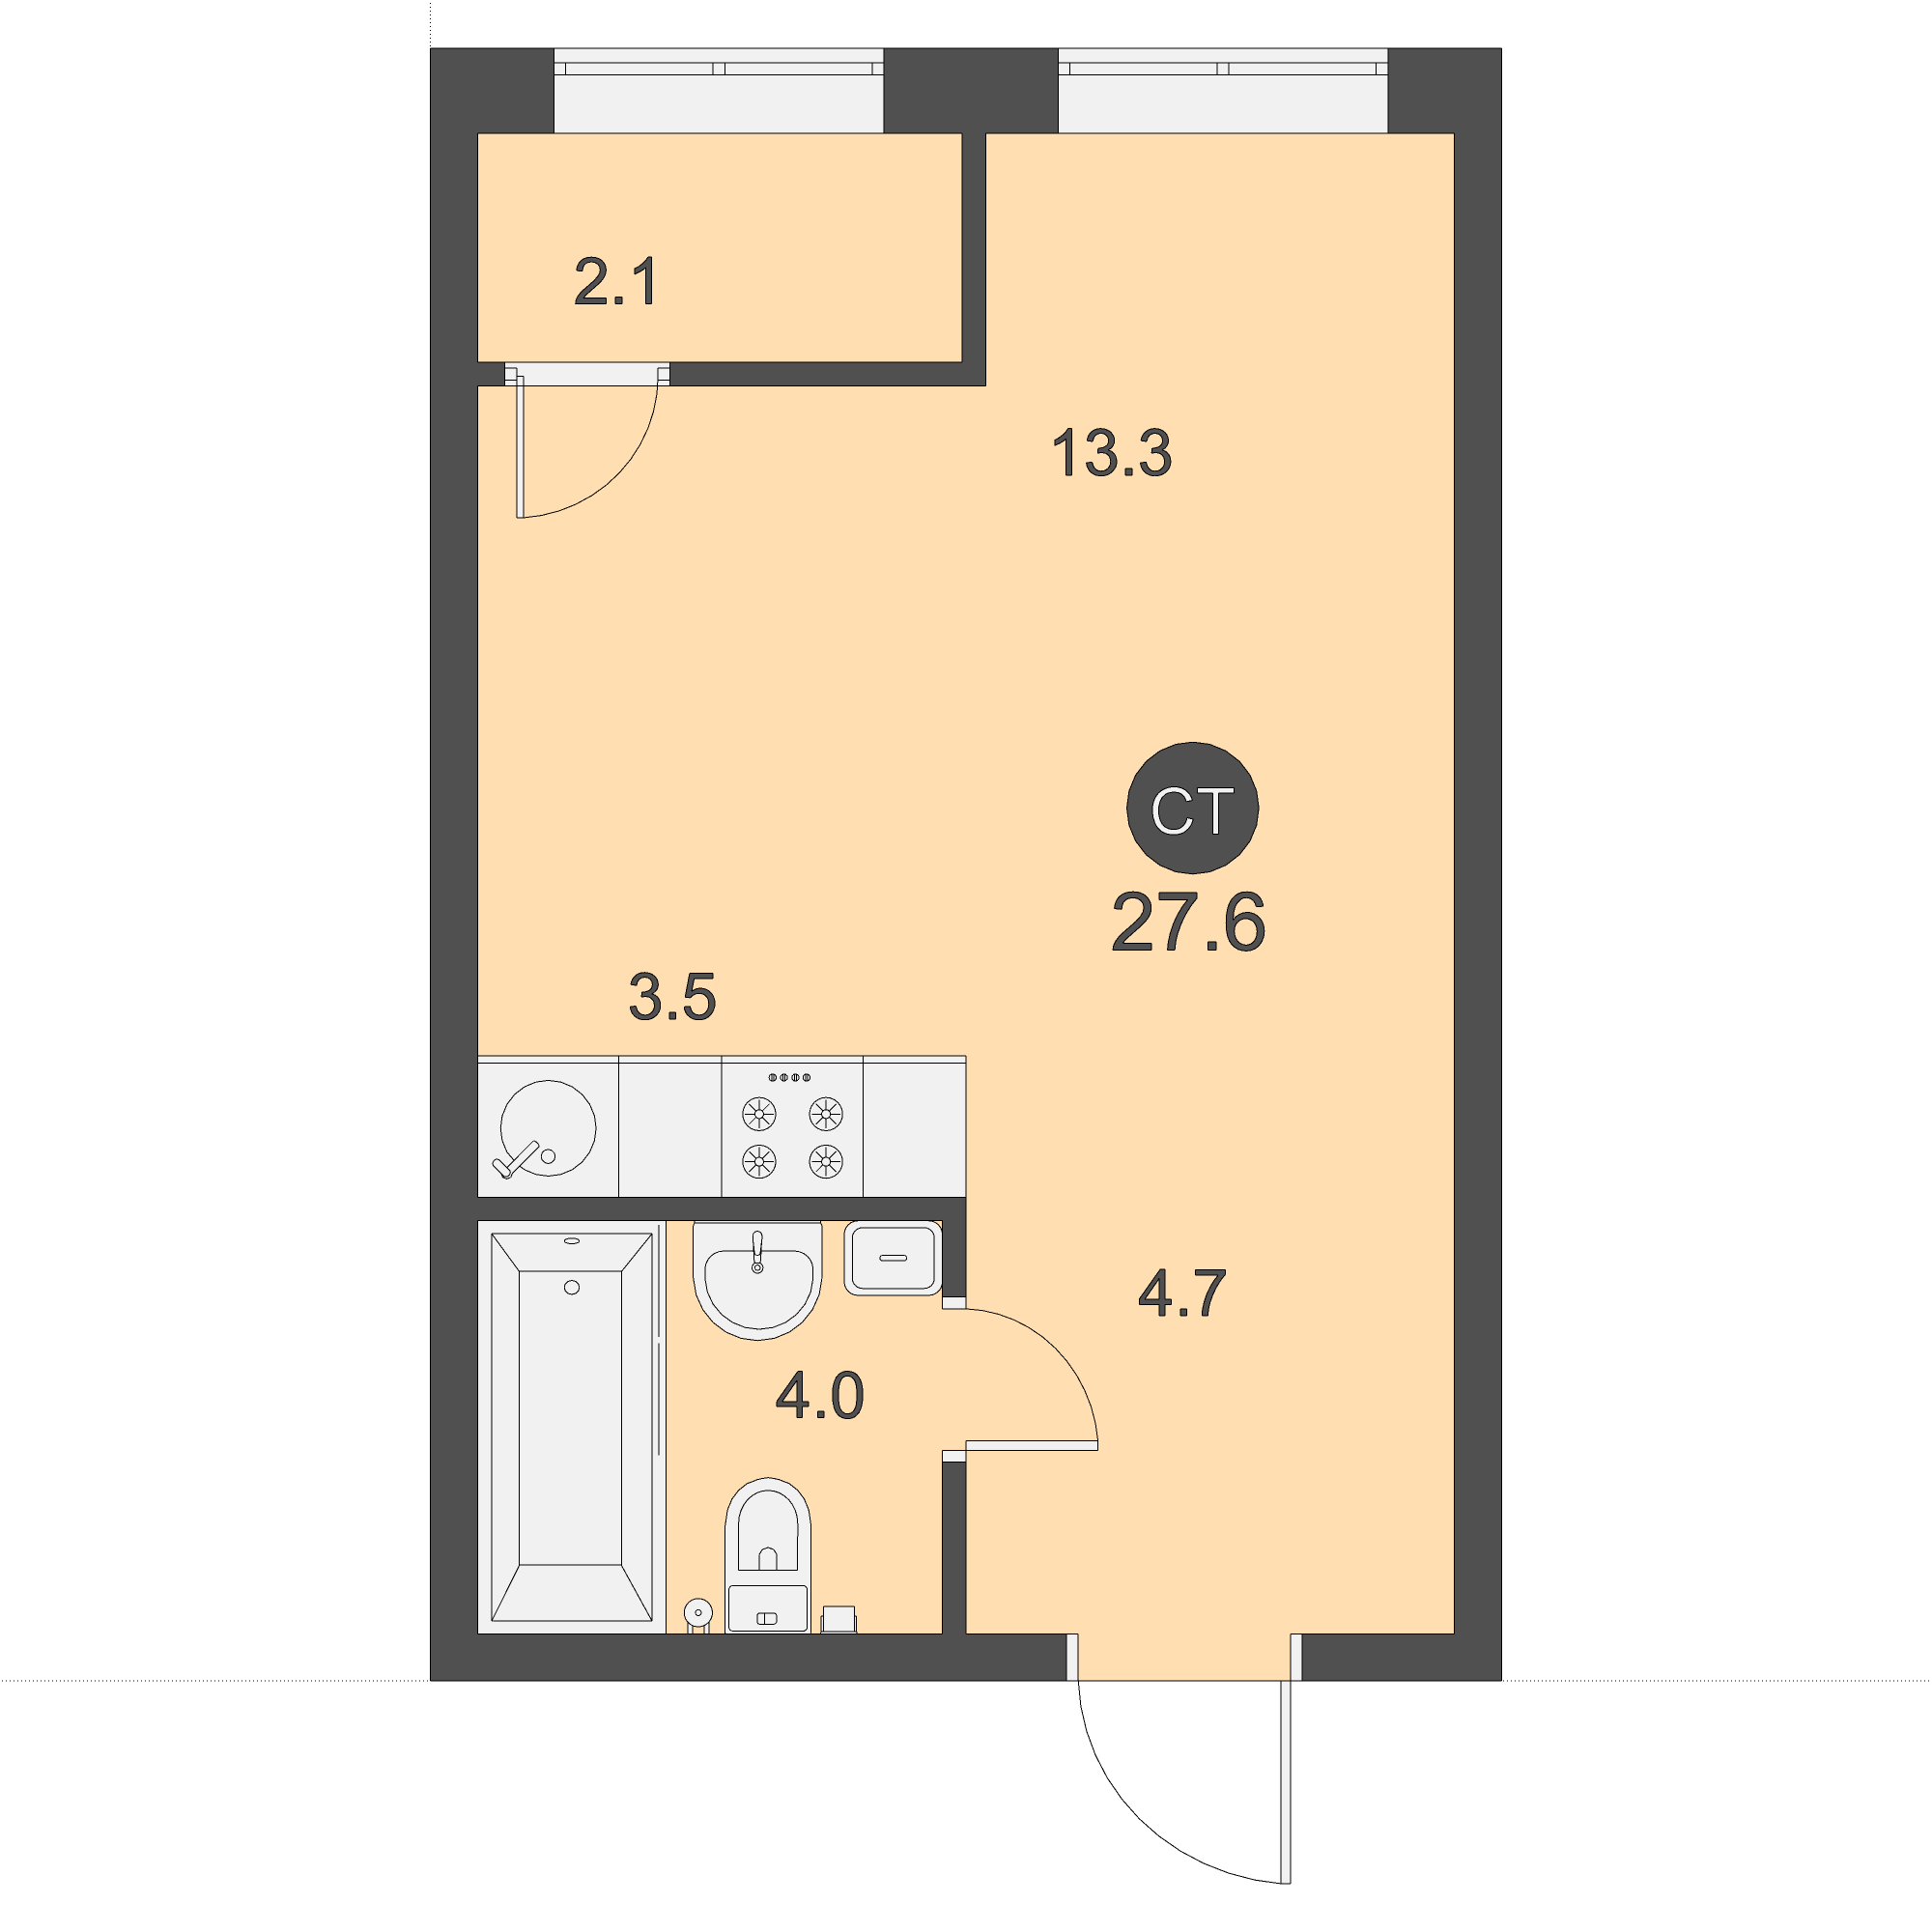 ЖК Дом на Бульваре, Студия 27,6 м2, за 4 057 200 ₽, 1 этаж